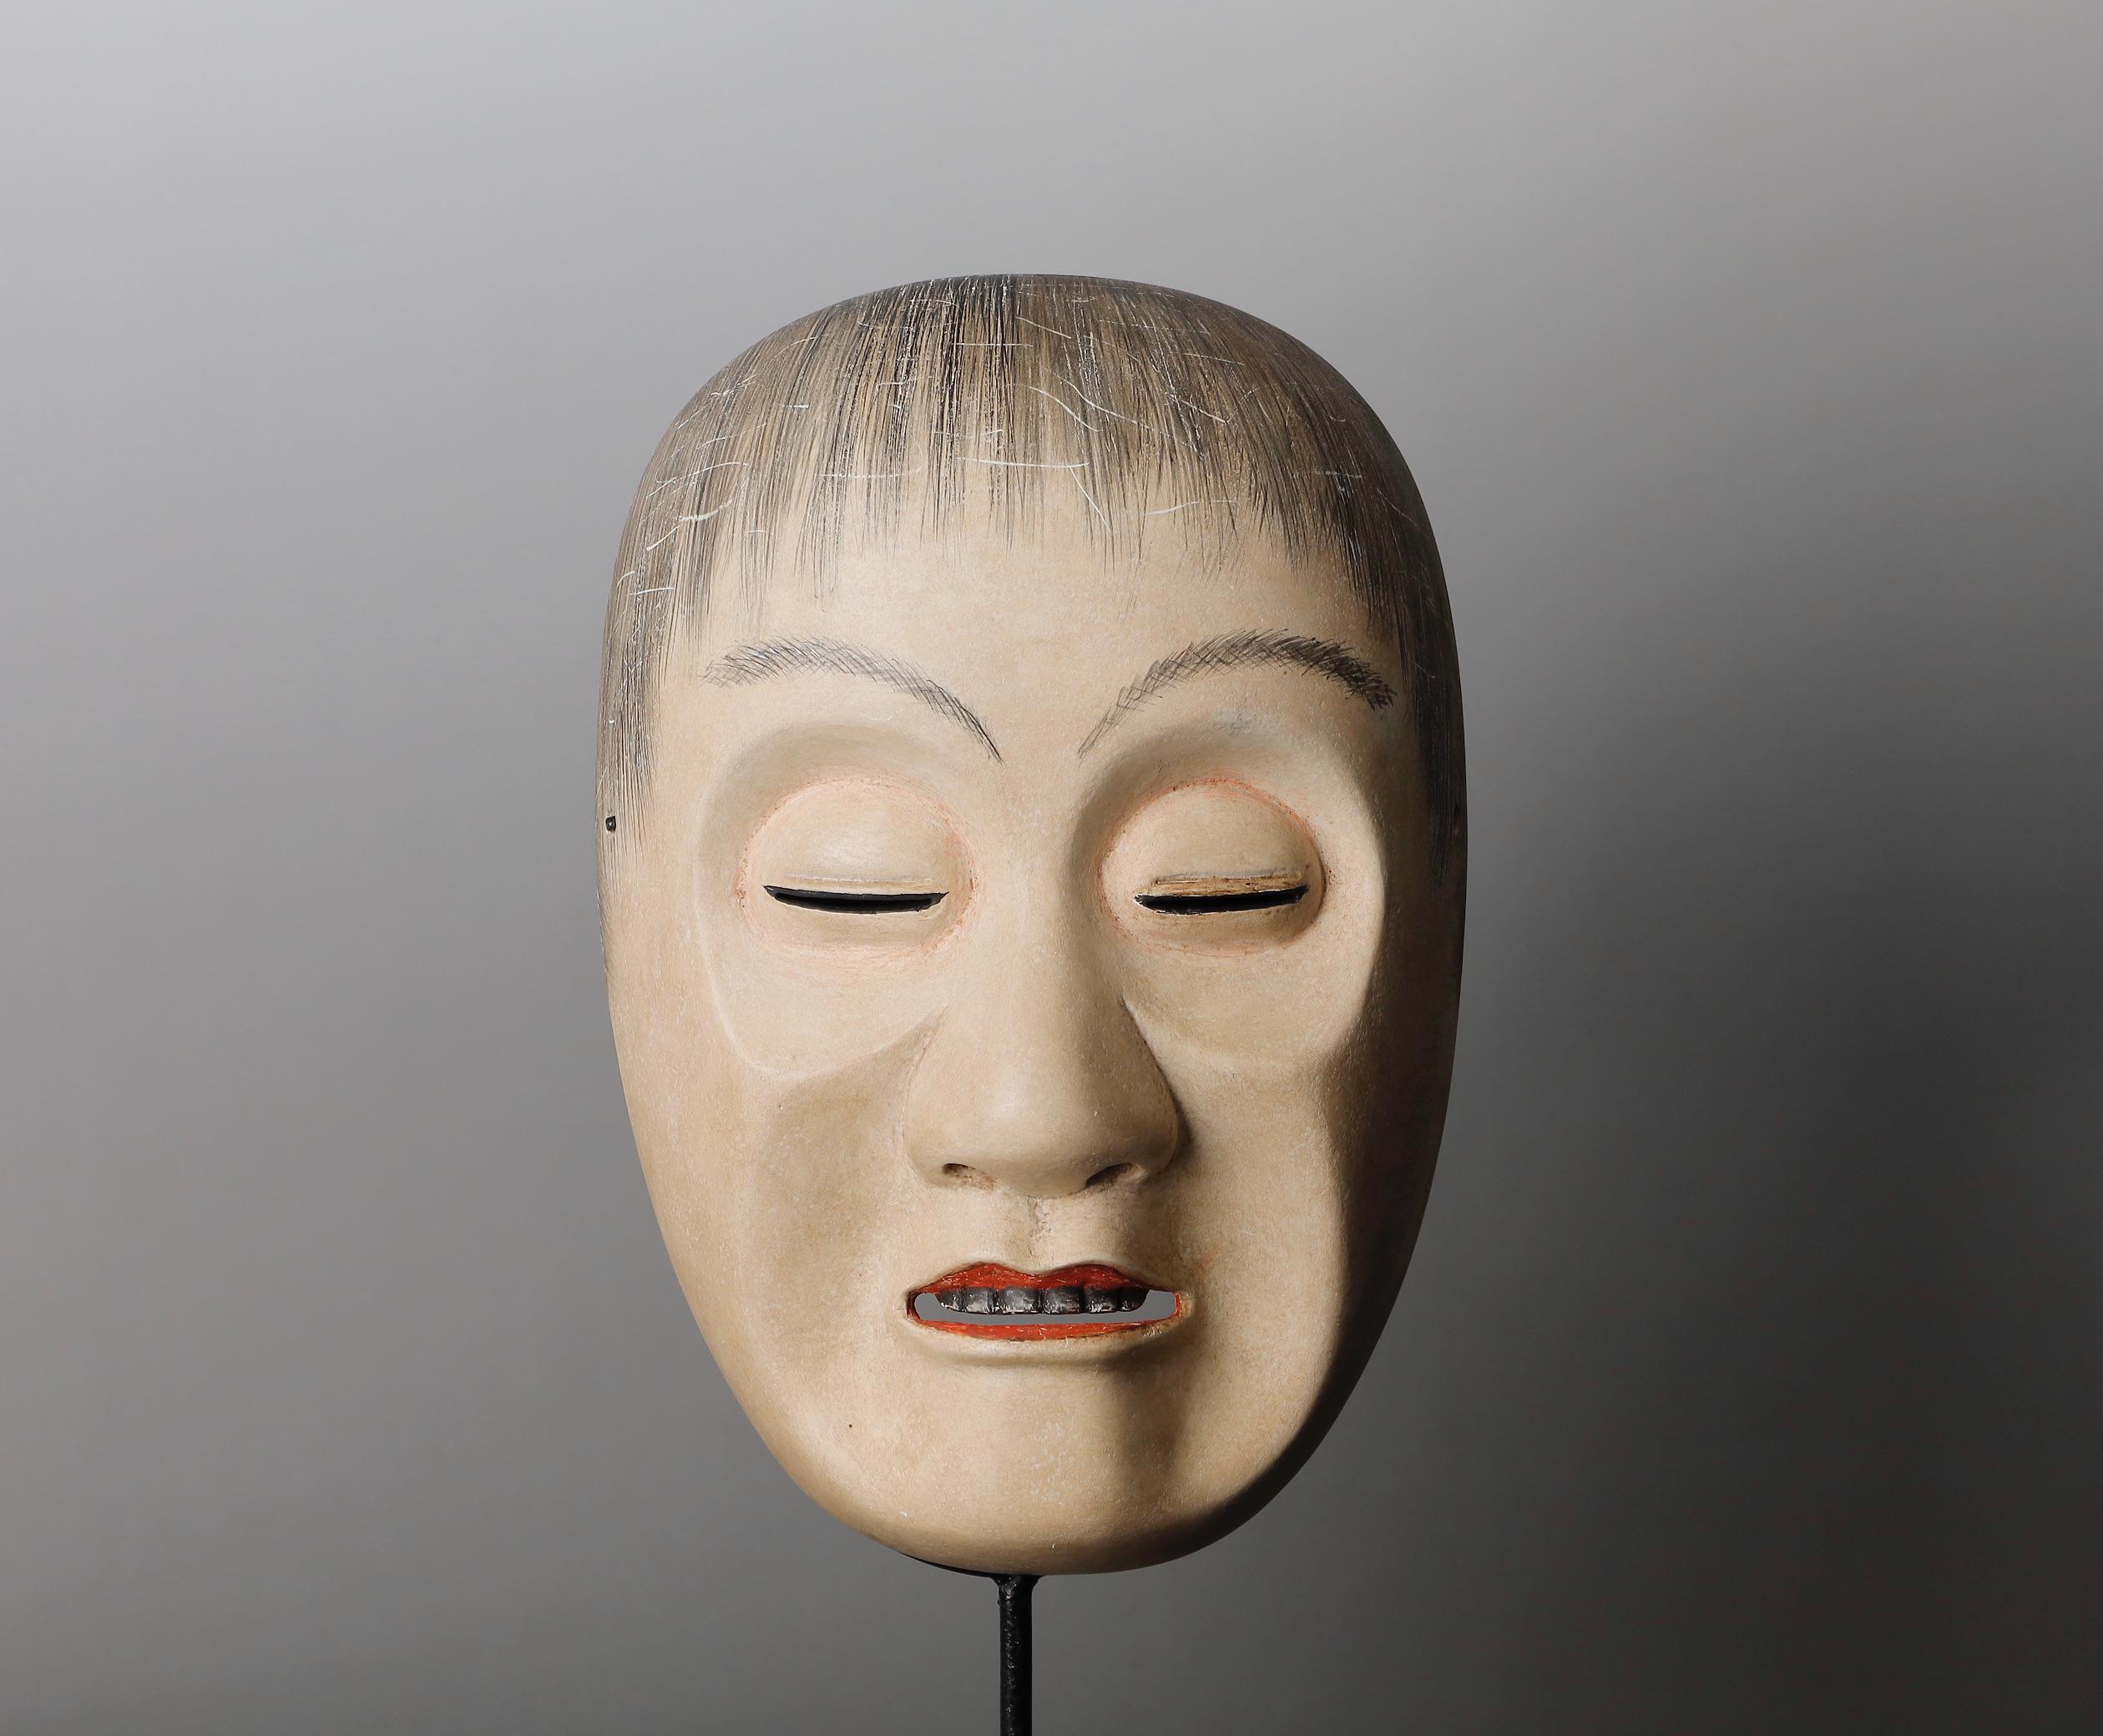 Masque nô signé japonais représentant le personnage de Yoroboshi (moine aveugle)
Yoroboshi capture les émotions complexes d'un deuil intense et d'une délivrance spirituelle. Derrière le dérangement douloureux qui est l'expression superficielle du